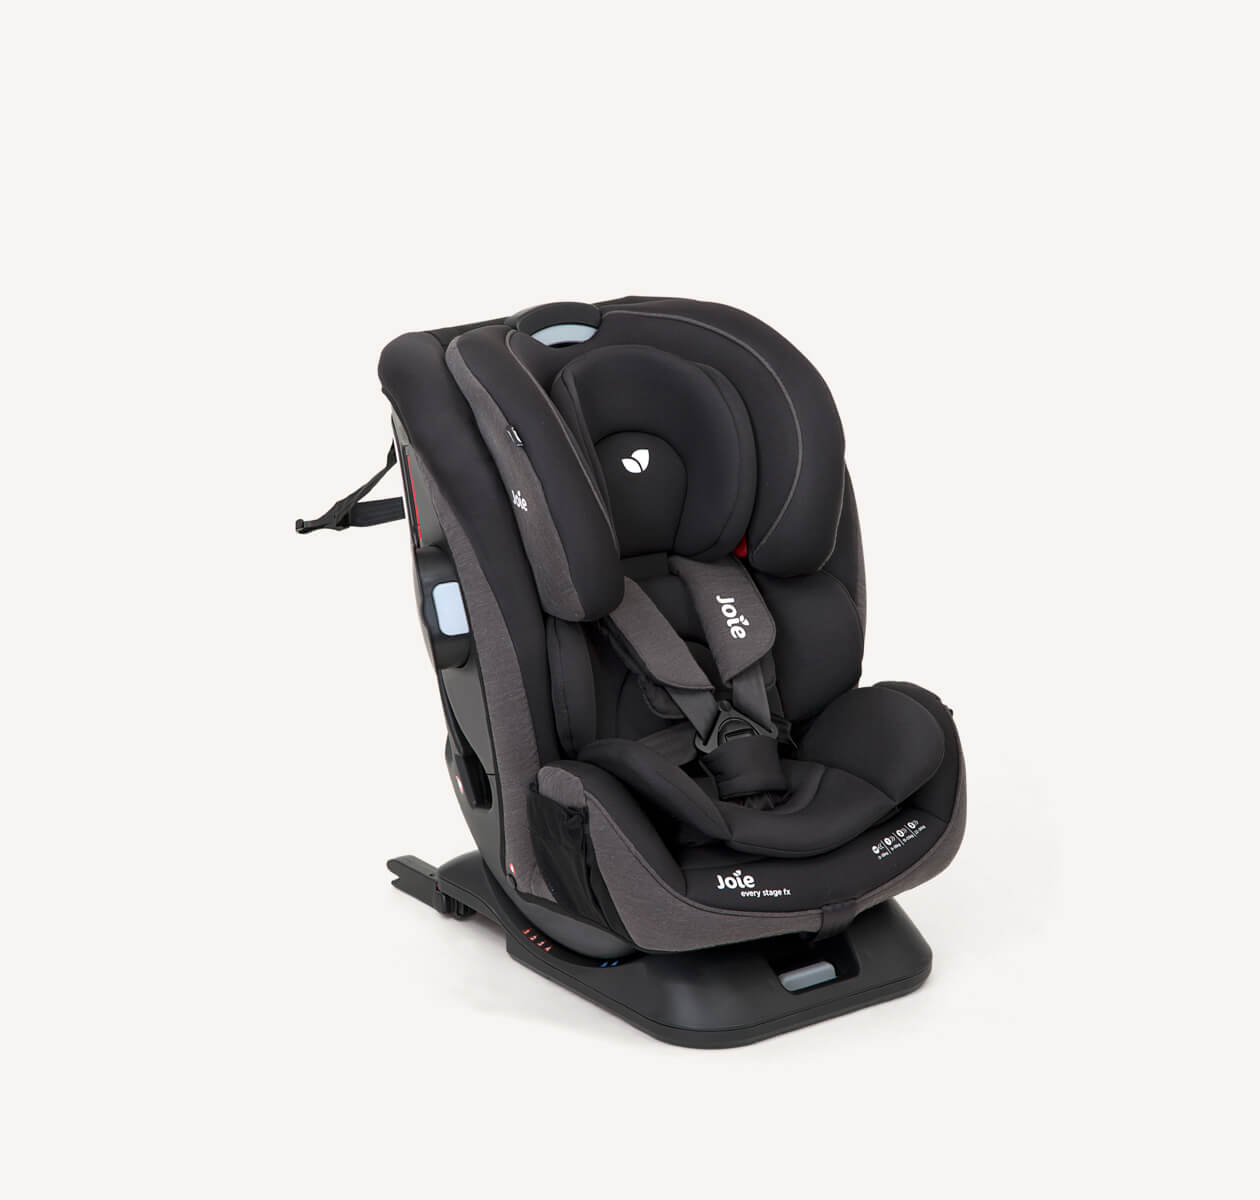 La silla de coche Joie Every Stage FX en color negro y gris con el arnés de 5 puntos y el reductor para bebés pequeños, en ángulo.